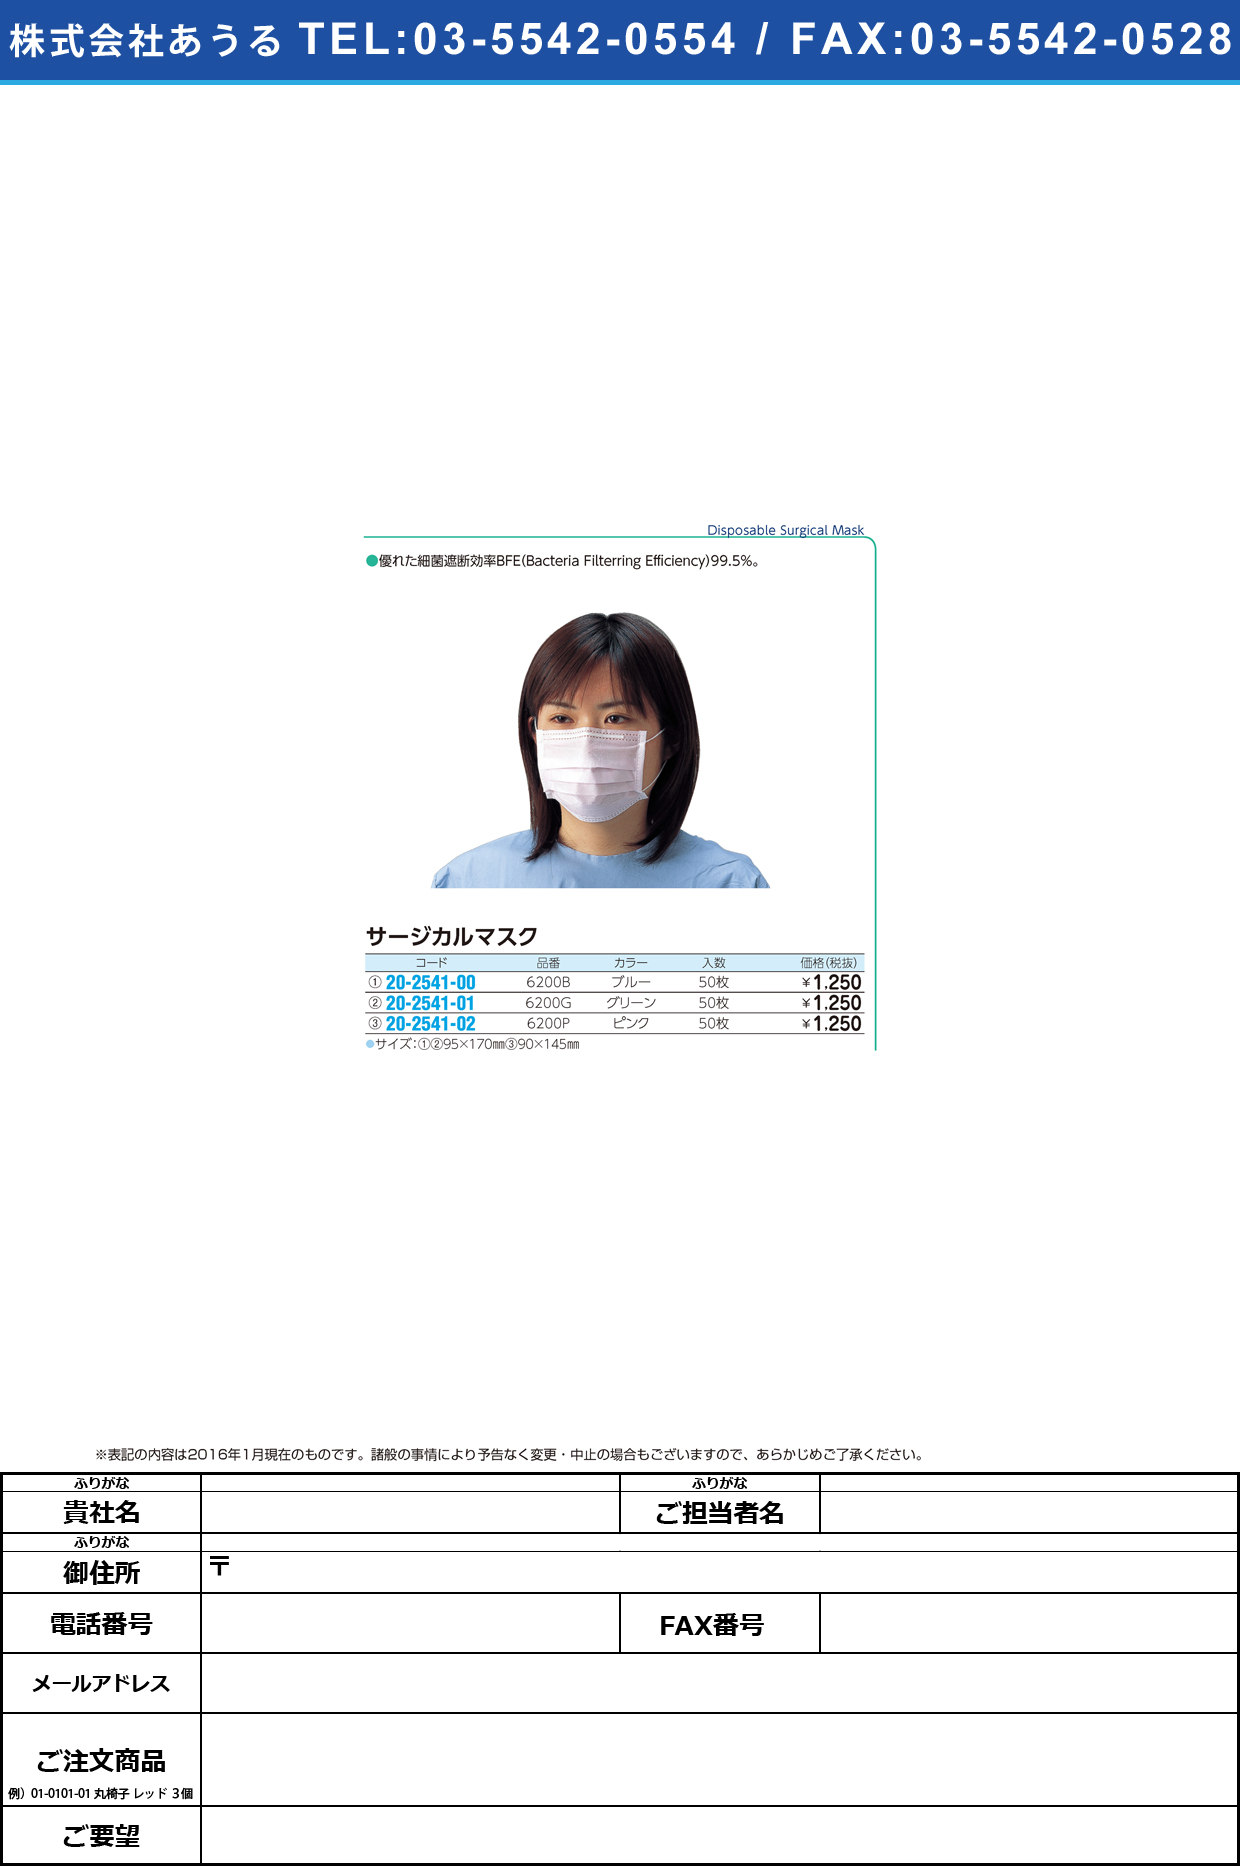 (20-2541-01)サージカルマスク ｻｰｼﾞｶﾙﾏｽｸ 6200G(ｸﾞﾘｰﾝ)50ﾏｲｲﾘ【1箱単位】【2016年カタログ商品】